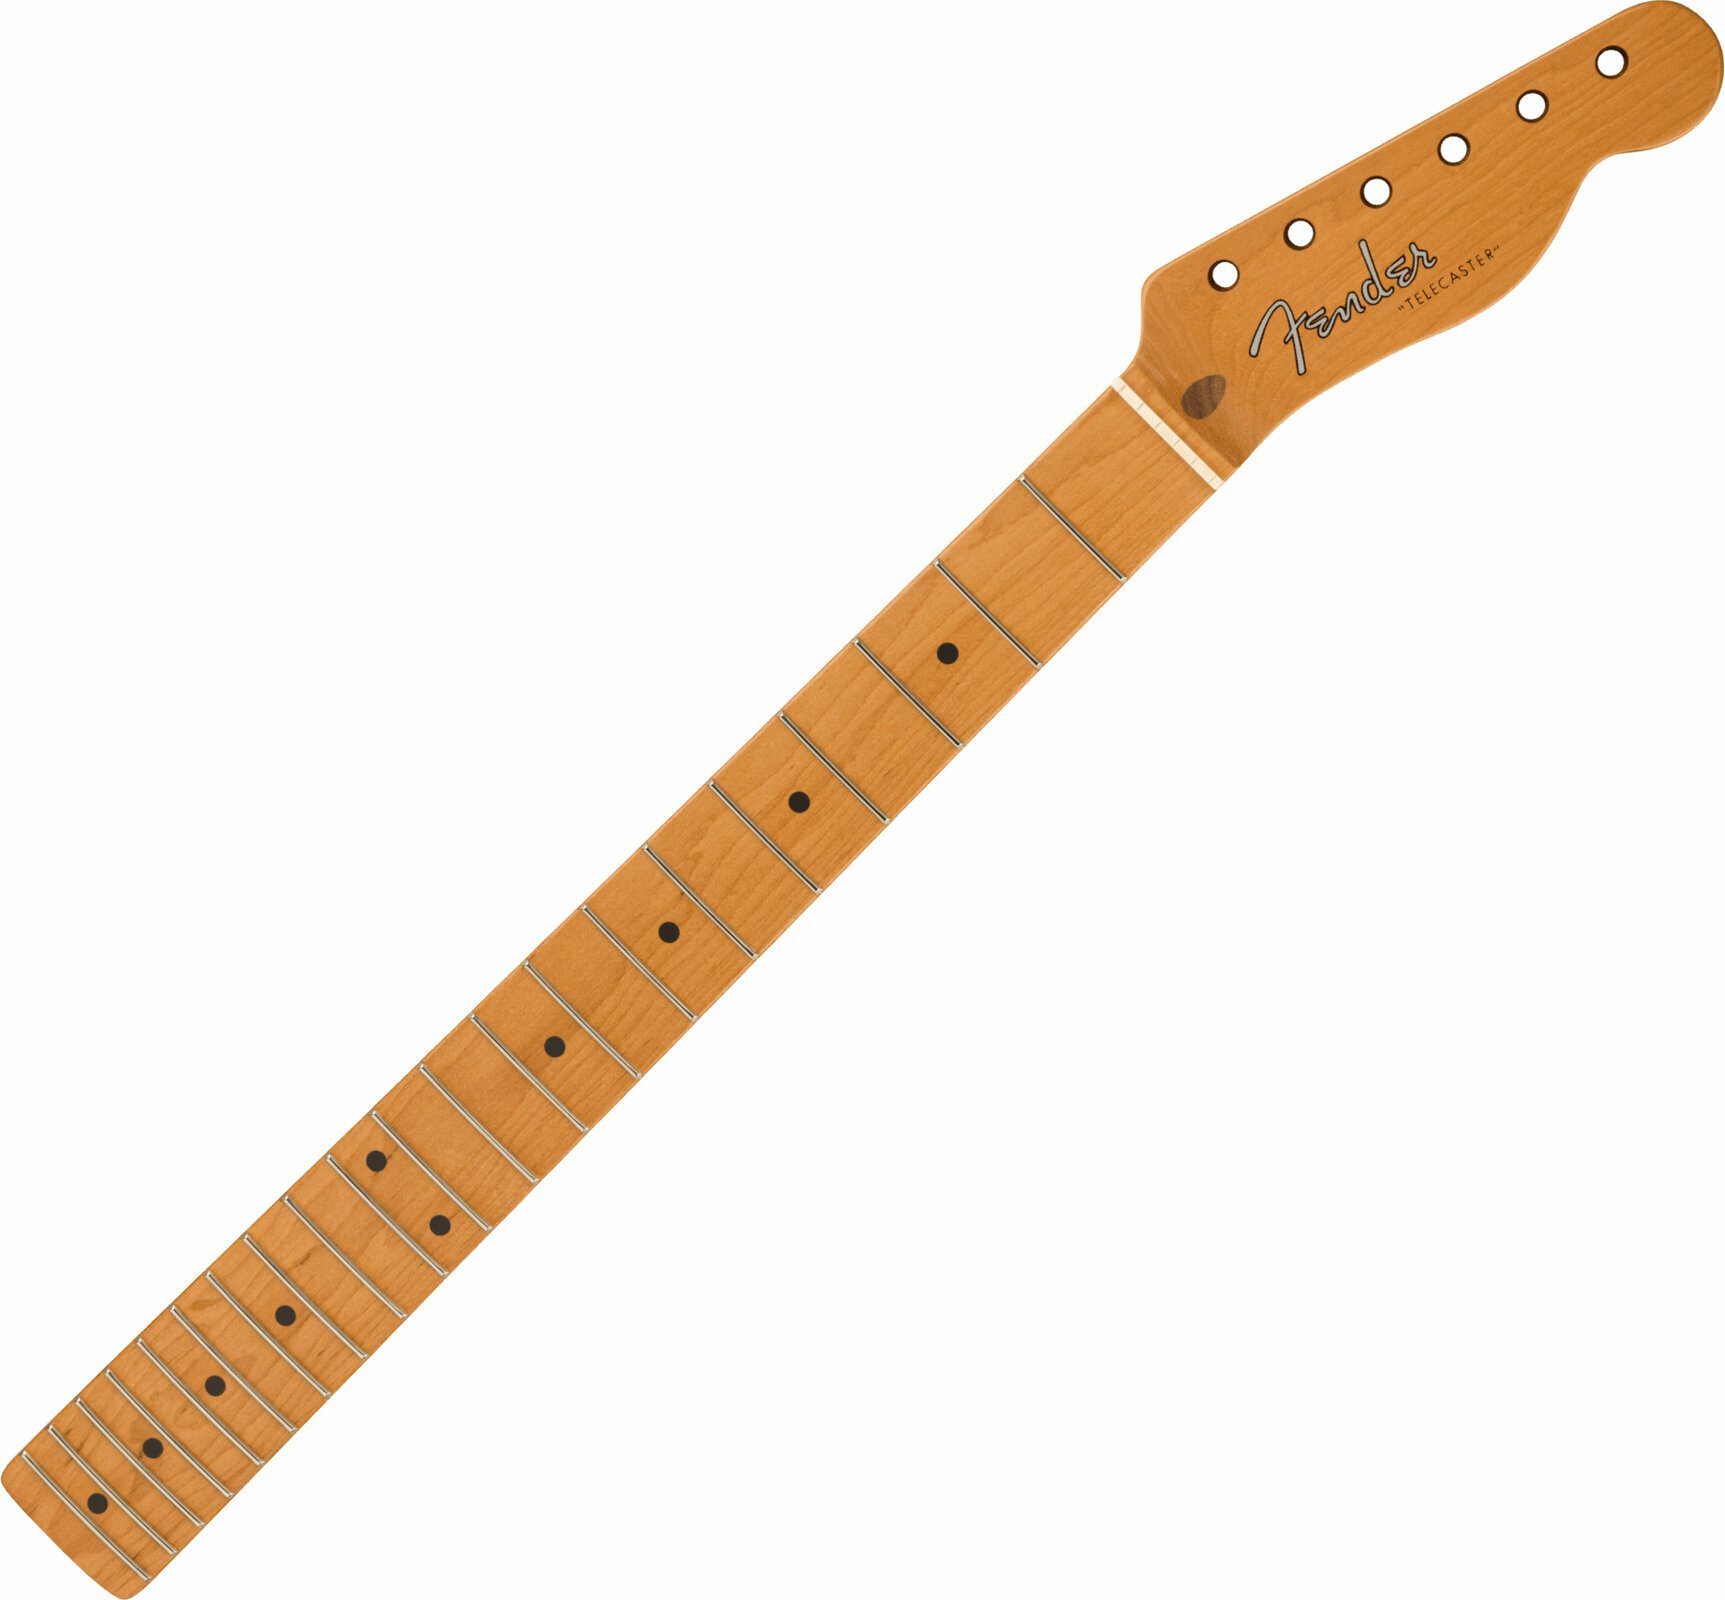 Guitar neck Fender Limited Edition 1952 Telecaster Roasted Maple Neck 21 6105 Frets 9.5" Radius "U" Shape 21 Roasted Maple Guitar neck